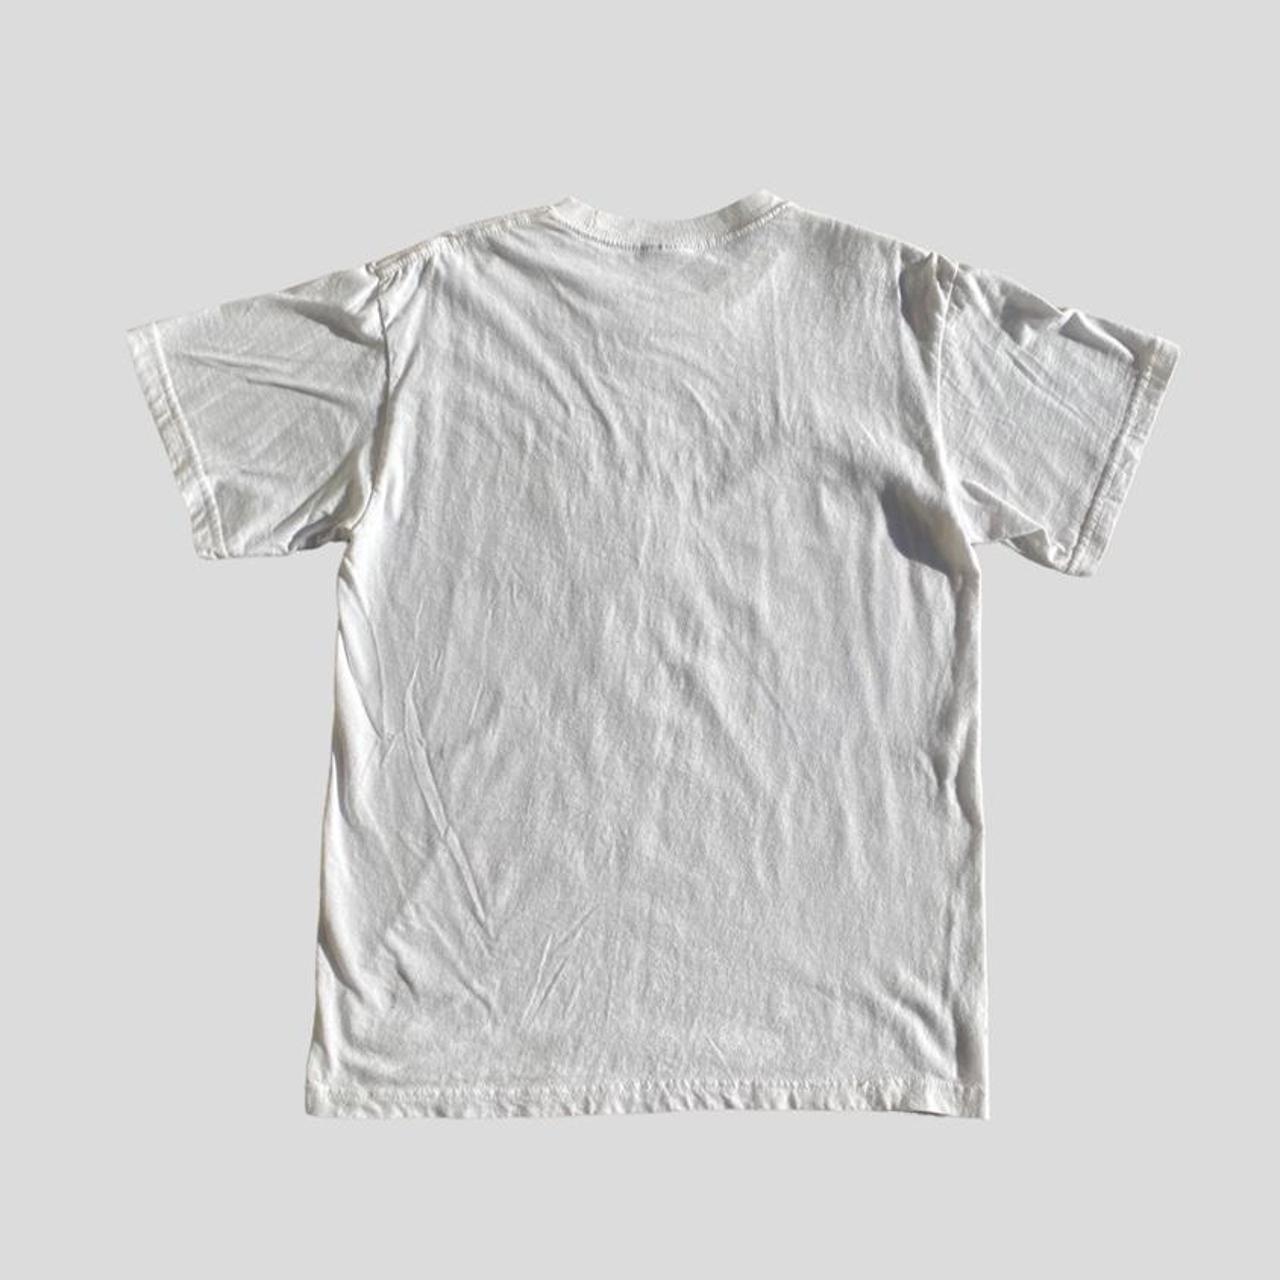 Canyon River Blues Men's White T-shirt (2)